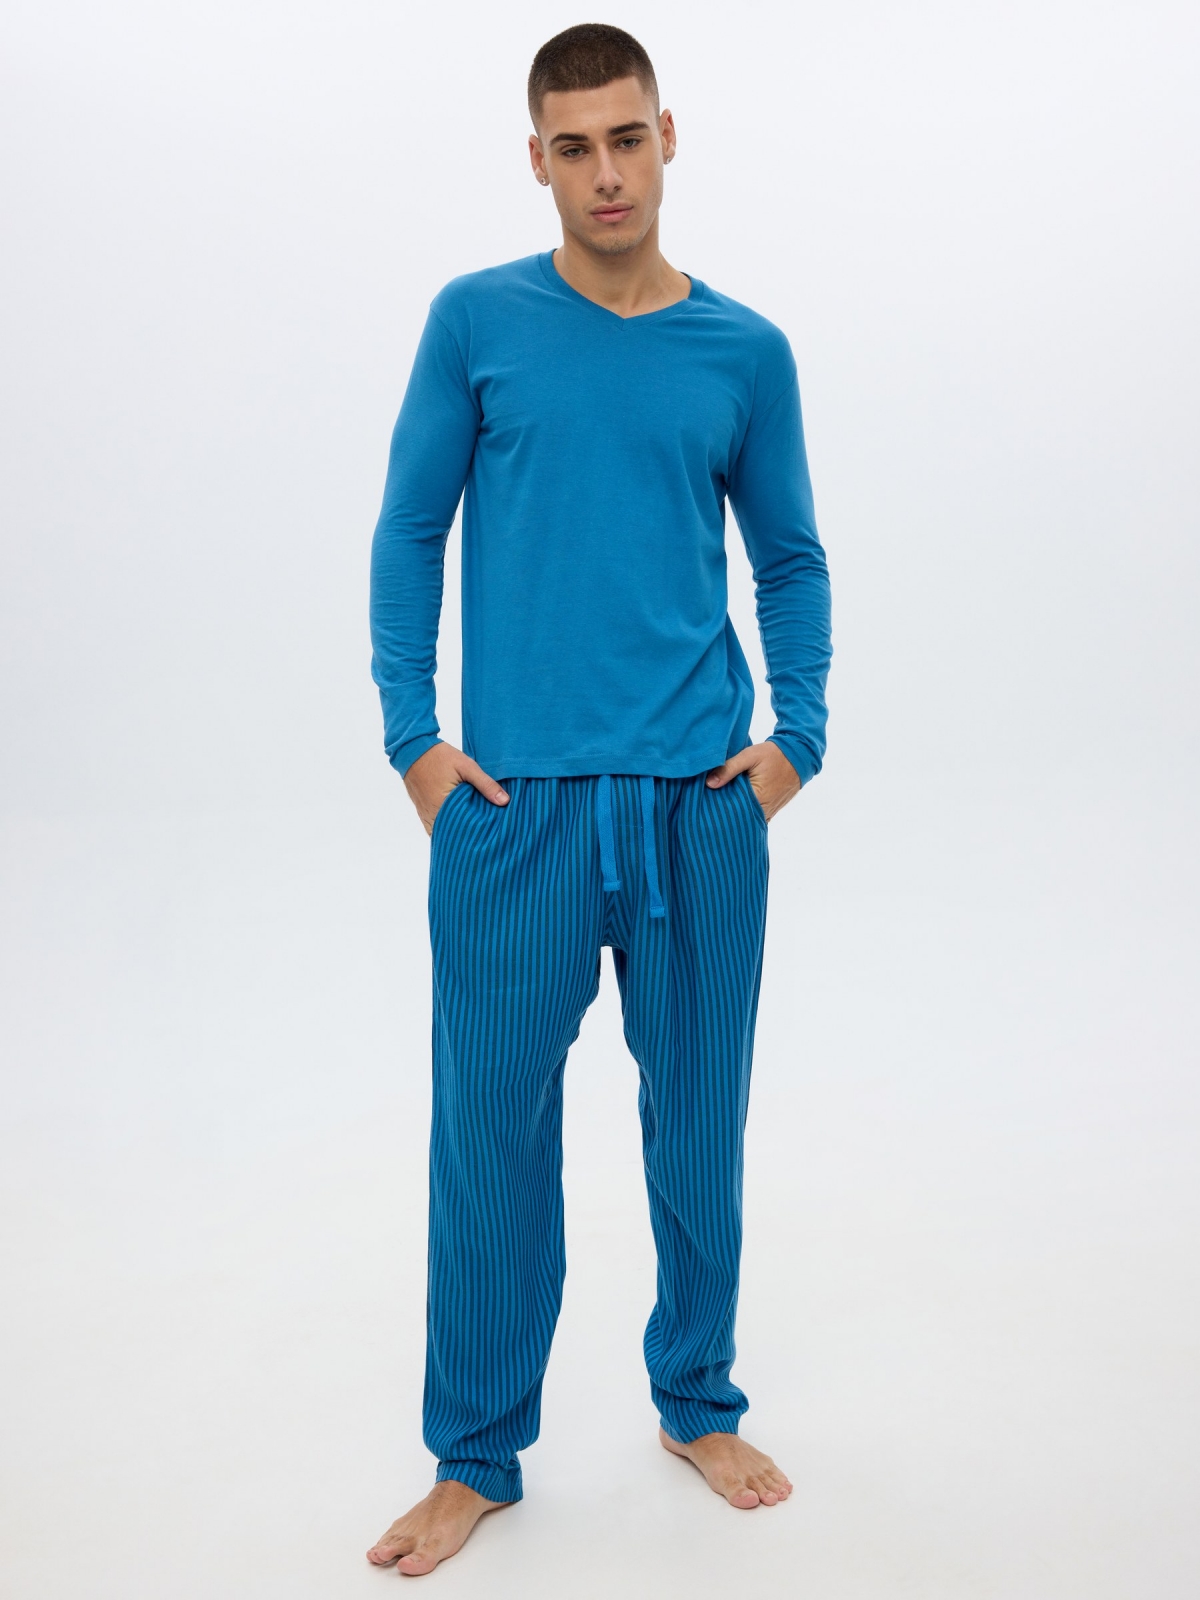 Pijama azul pantalón rayas azul vista media frontal